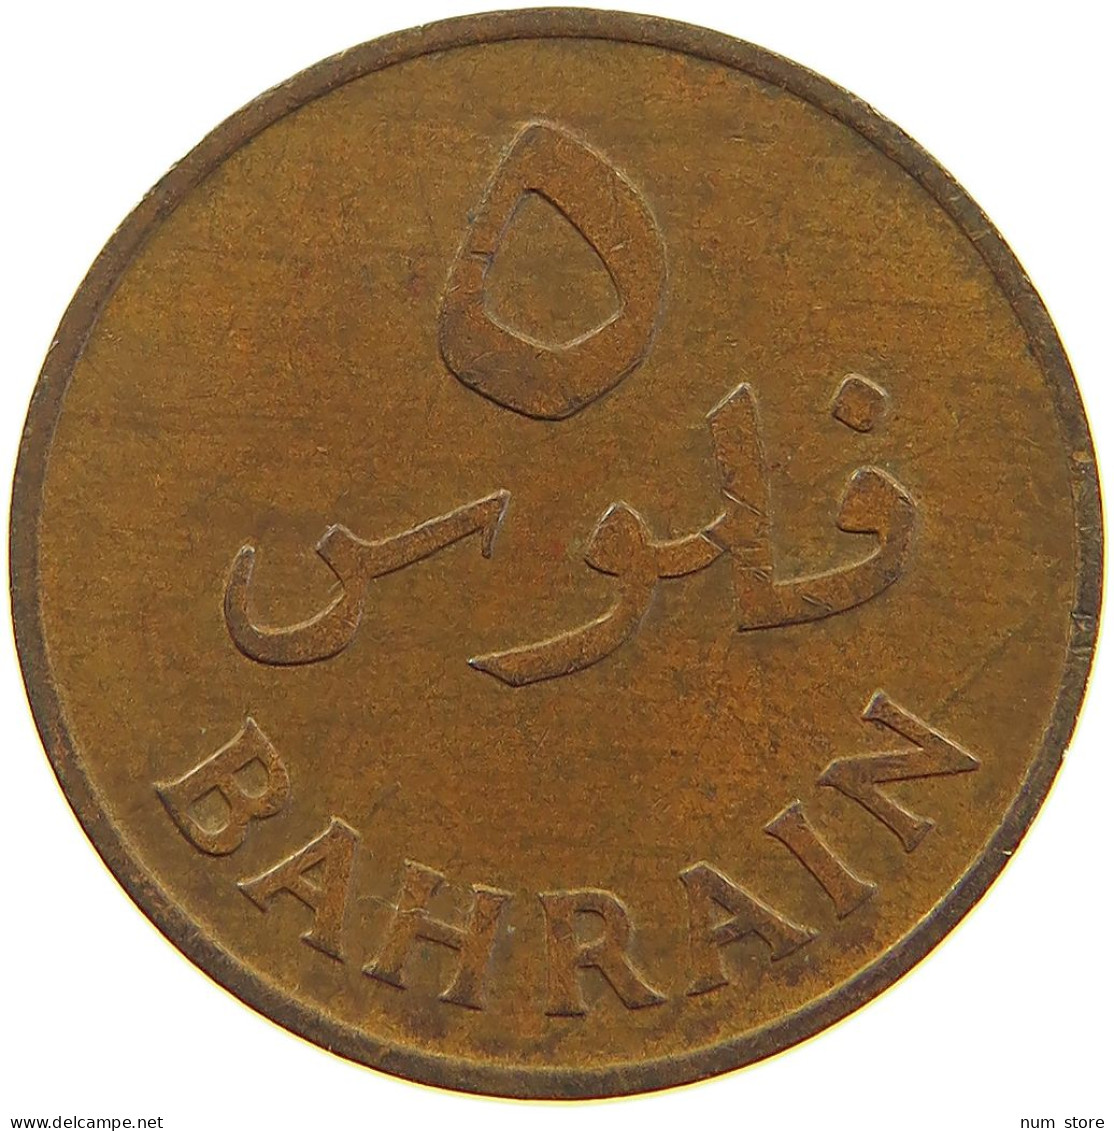 BAHRAIN 5 FILS 1965  #a067 0309 - Bahrain